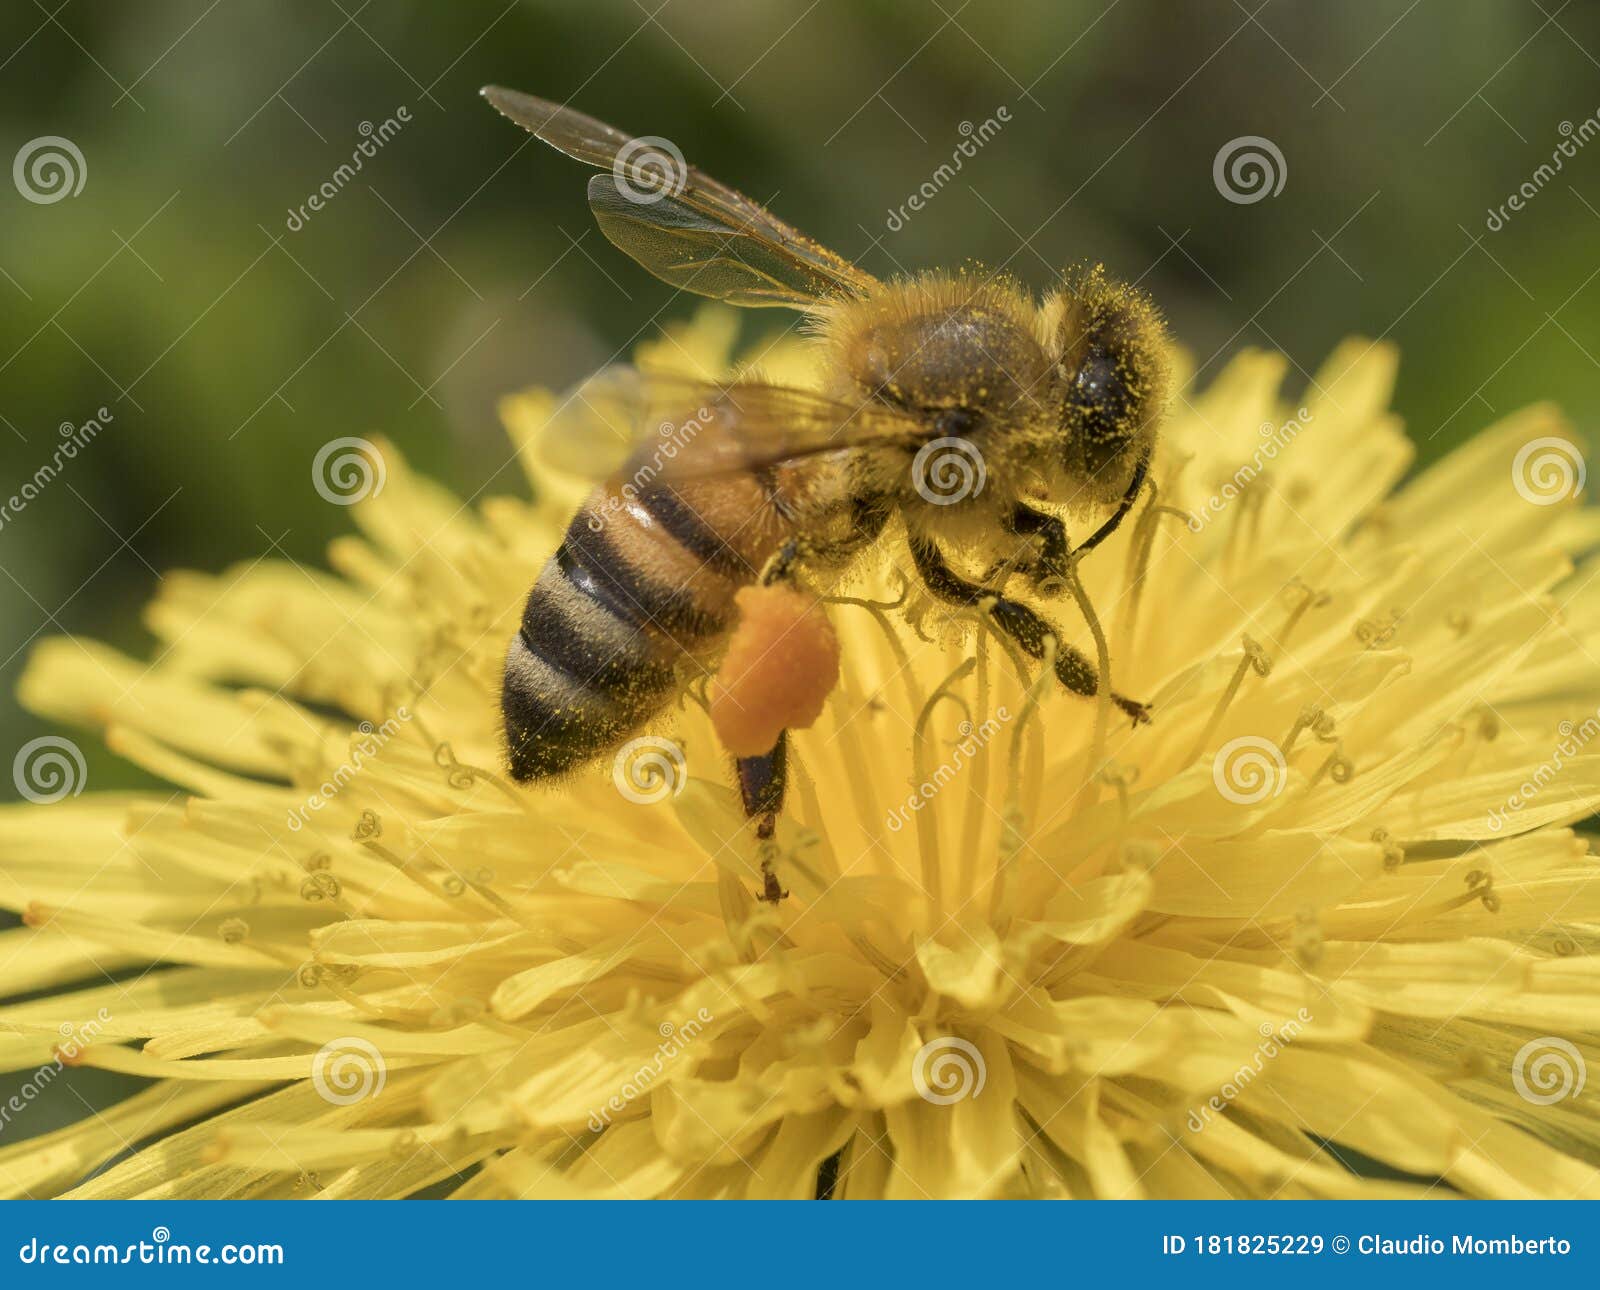 immagine ravvicinata di unÃ¢â¬â¢ape al lavoro su fiore di tarassaco durante la raccolta del polline